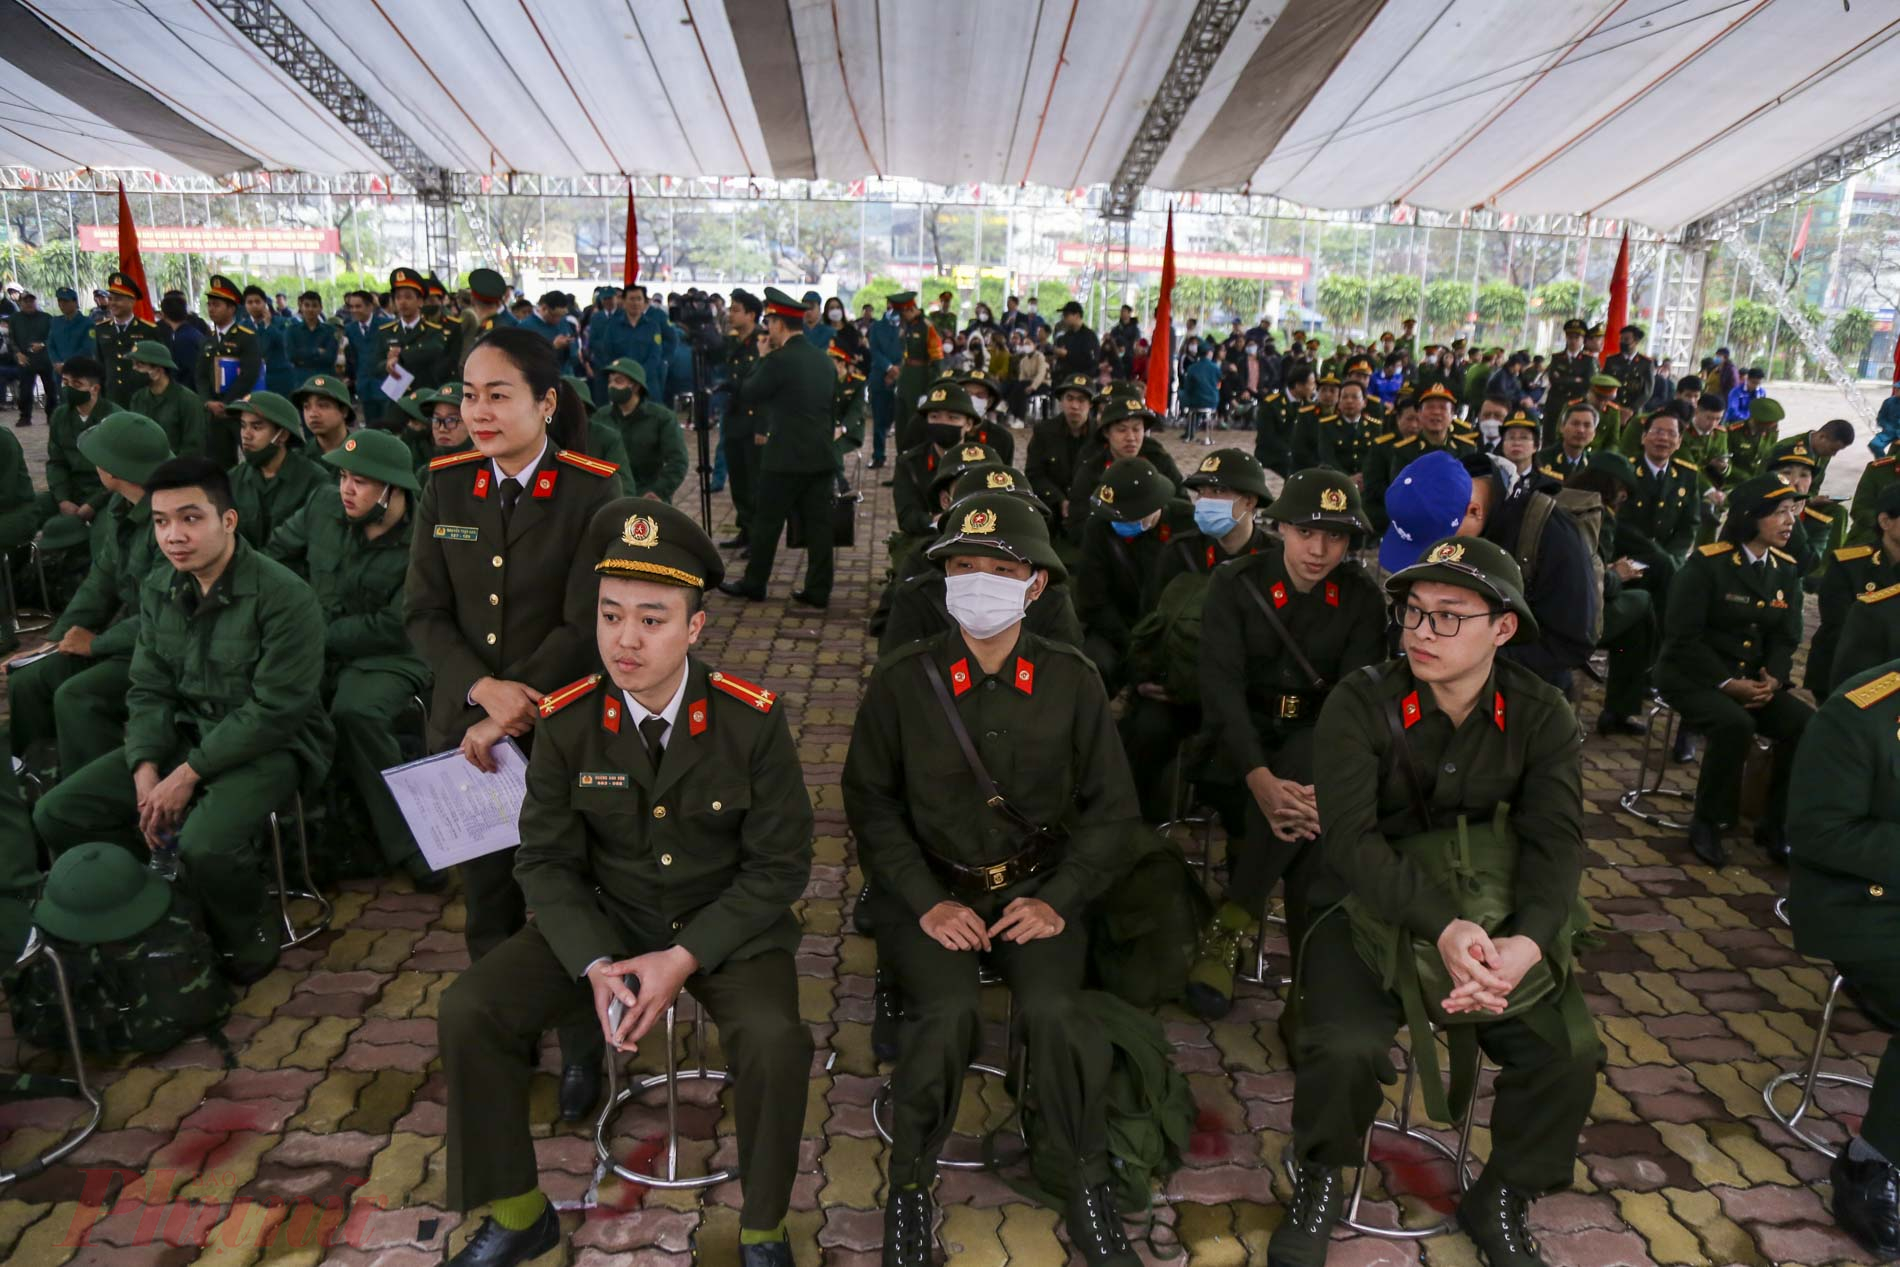 3.Trong số công dân quận Ba Đình lên đường nhập ngũ năm nay, có 69 công dân tham gia nghĩa vụ quân sự. Đáng chú ý, trong số đó có 41 công dân tự nguyện đăng ký nhập ngũ.